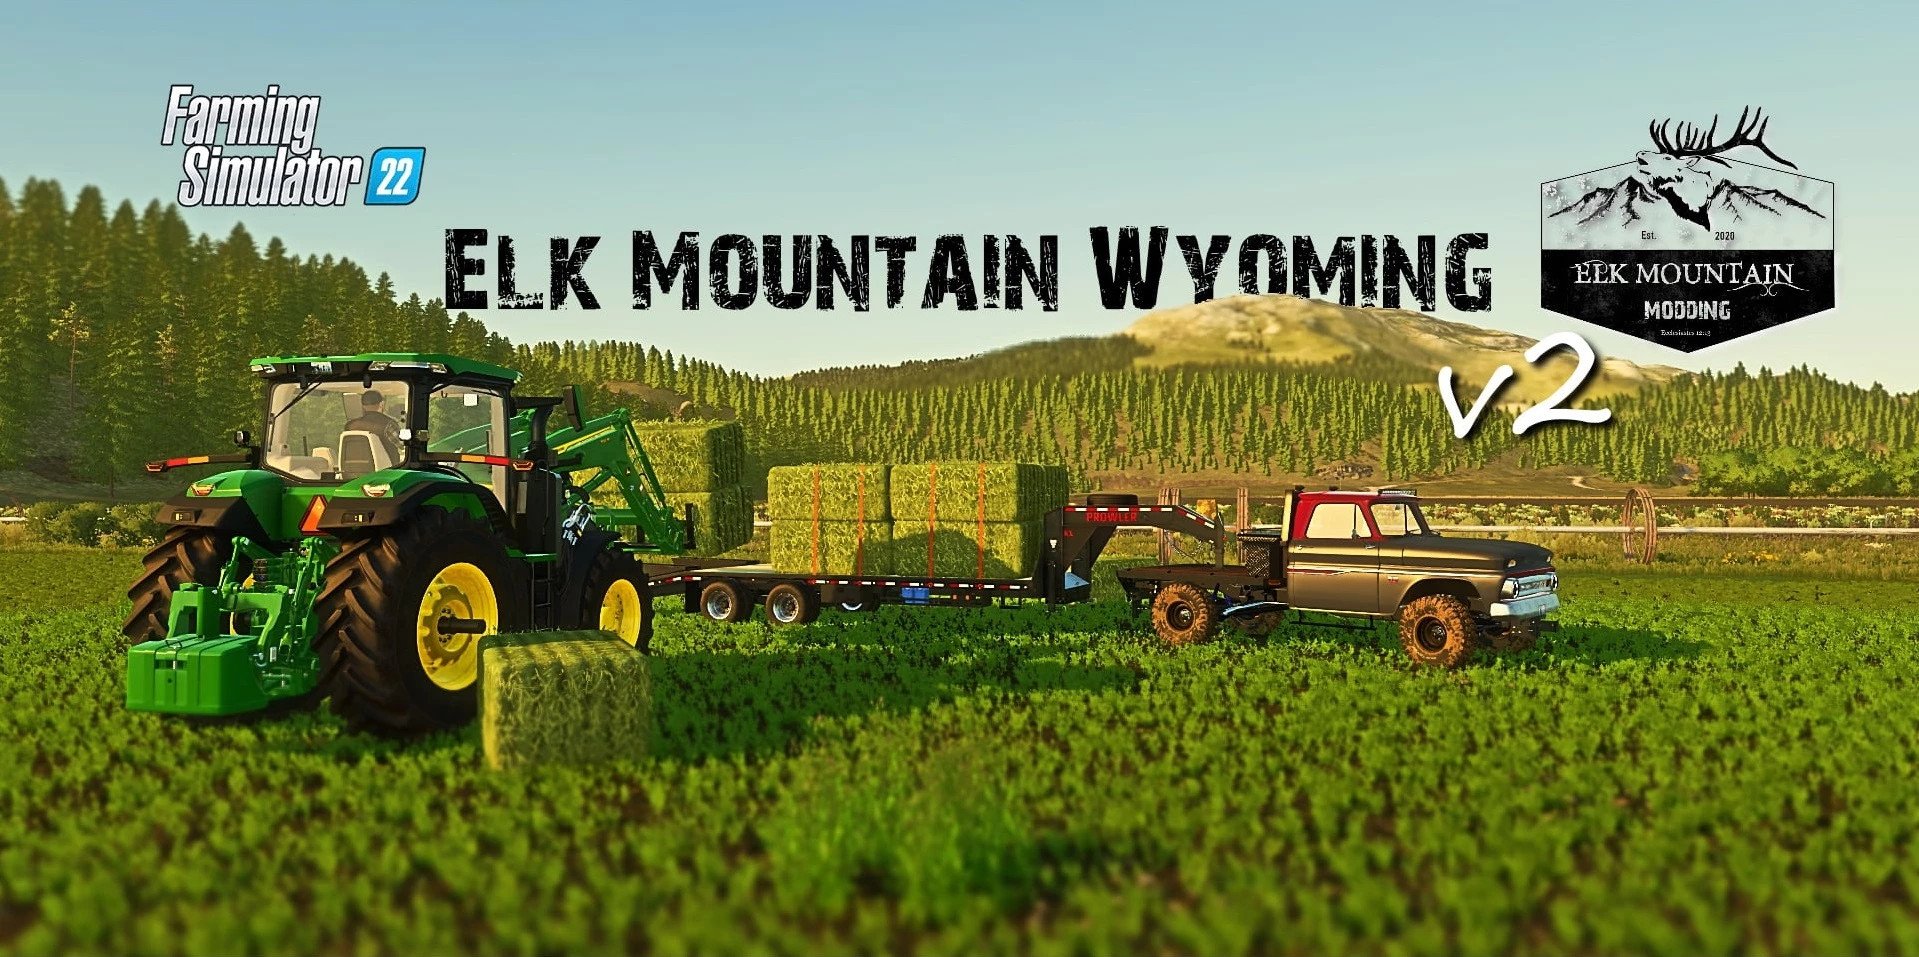 Elk Mountain Wyoming